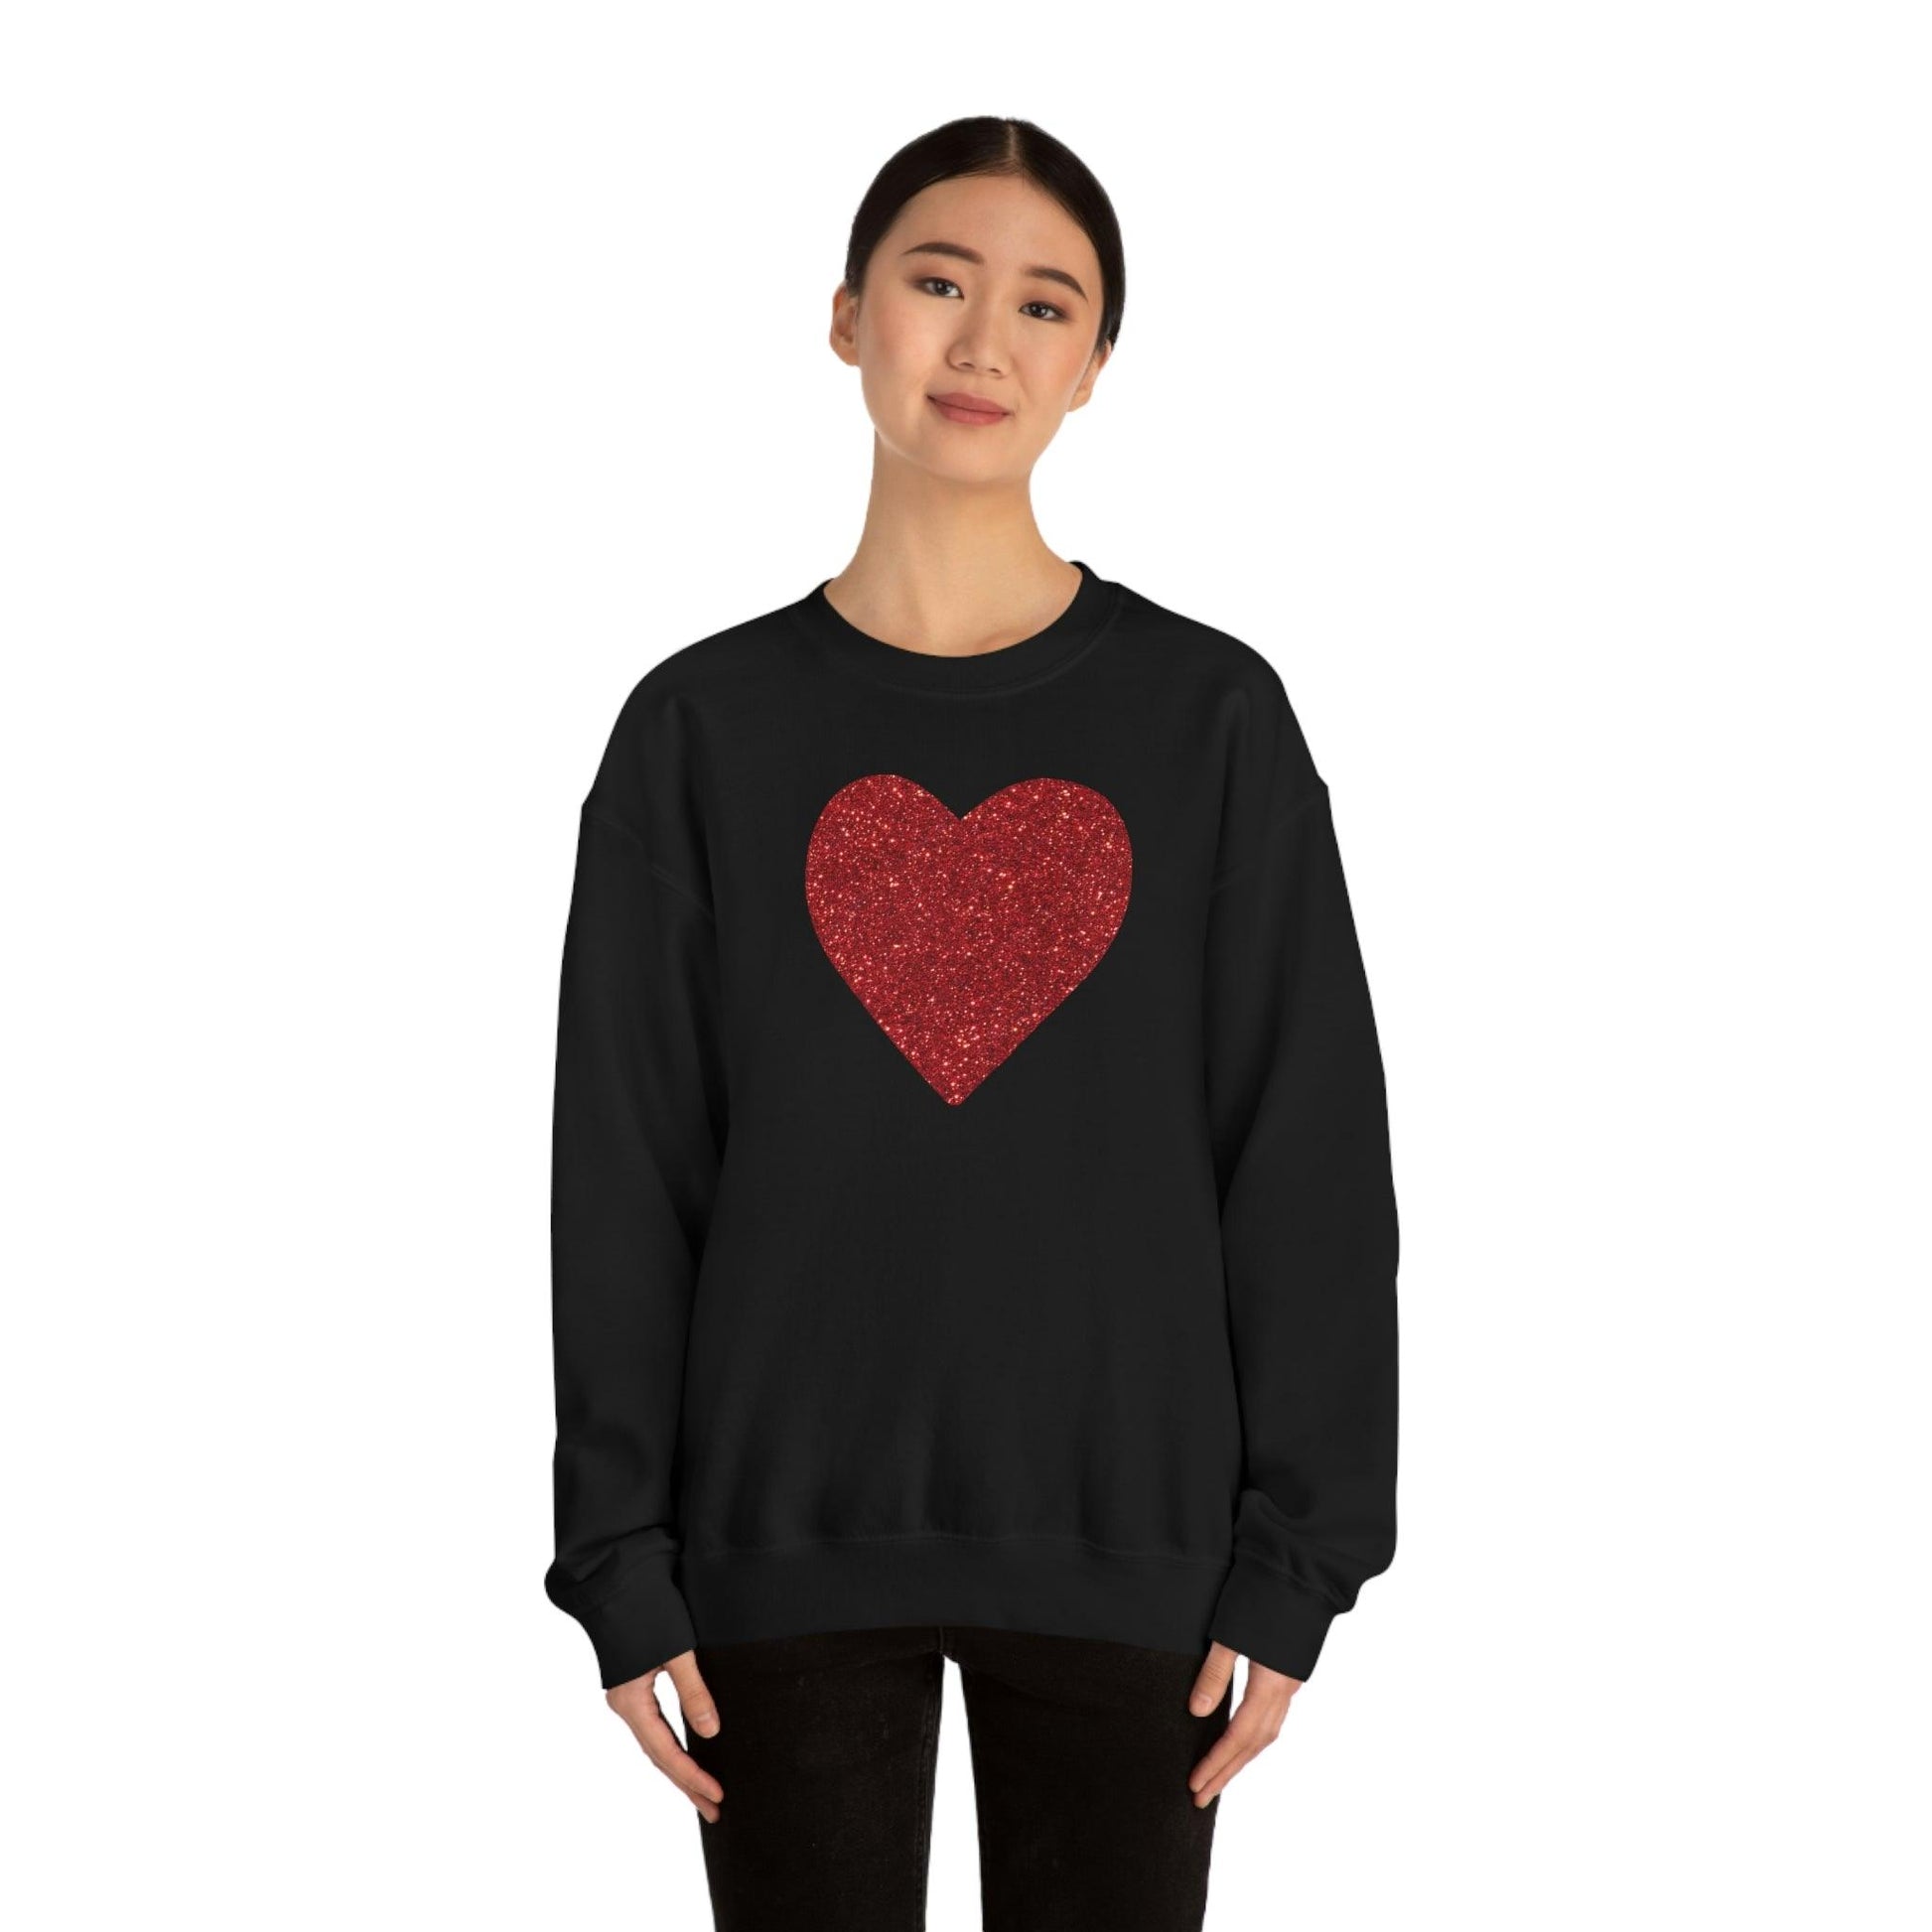 Heart Sweatshirt Love sweatshirt Love Shirt Cute Love Shirt with Heart Valentine sweatshirt - Matching Love shirt Girlfriend gift Boyfriend - Giftsmojo